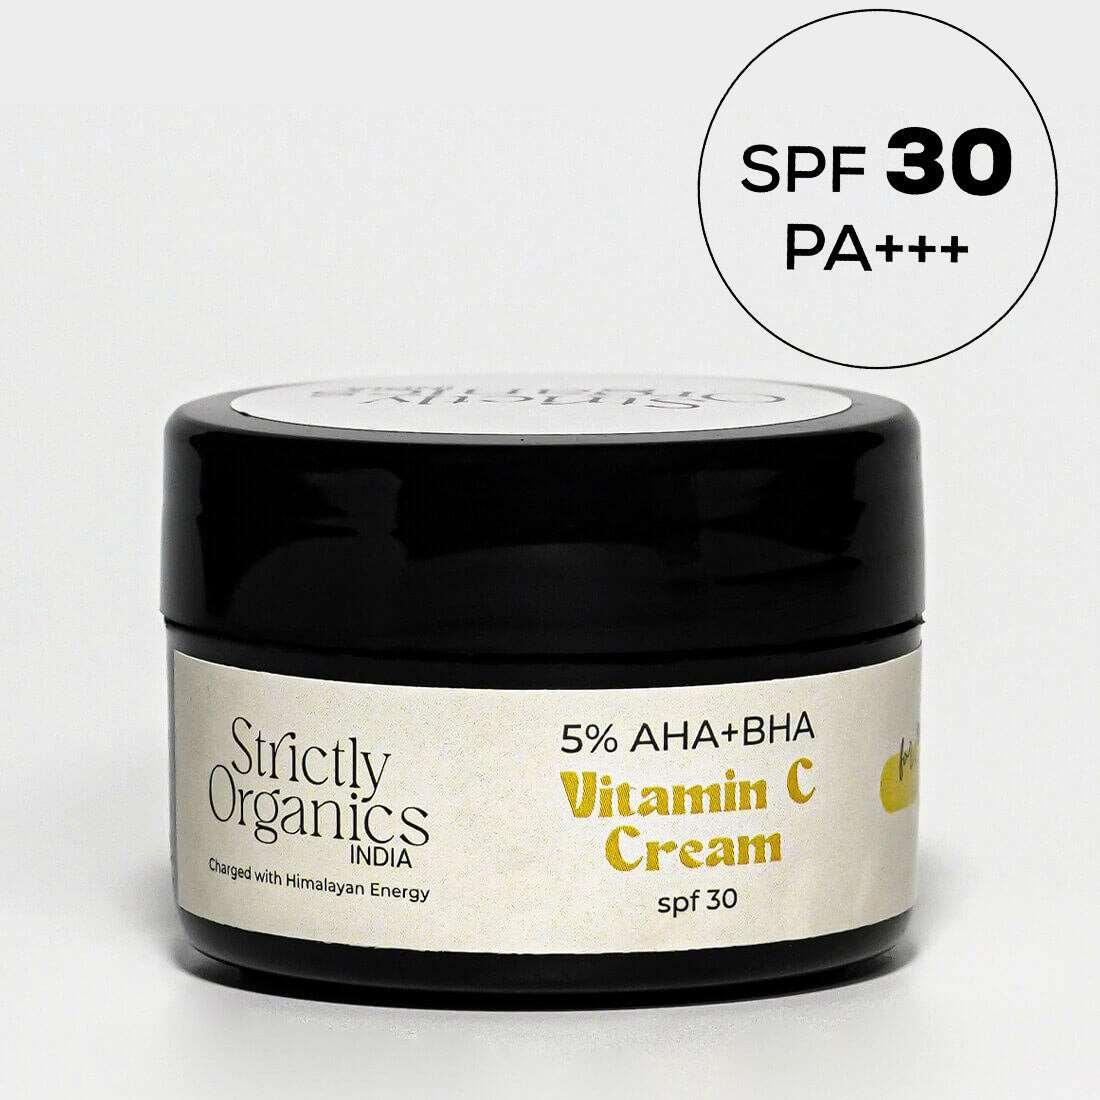 5% AHA+BHA Vitamin C Serum Cream for Skin Brightening - SPF30  PA+++ | All Skin Types